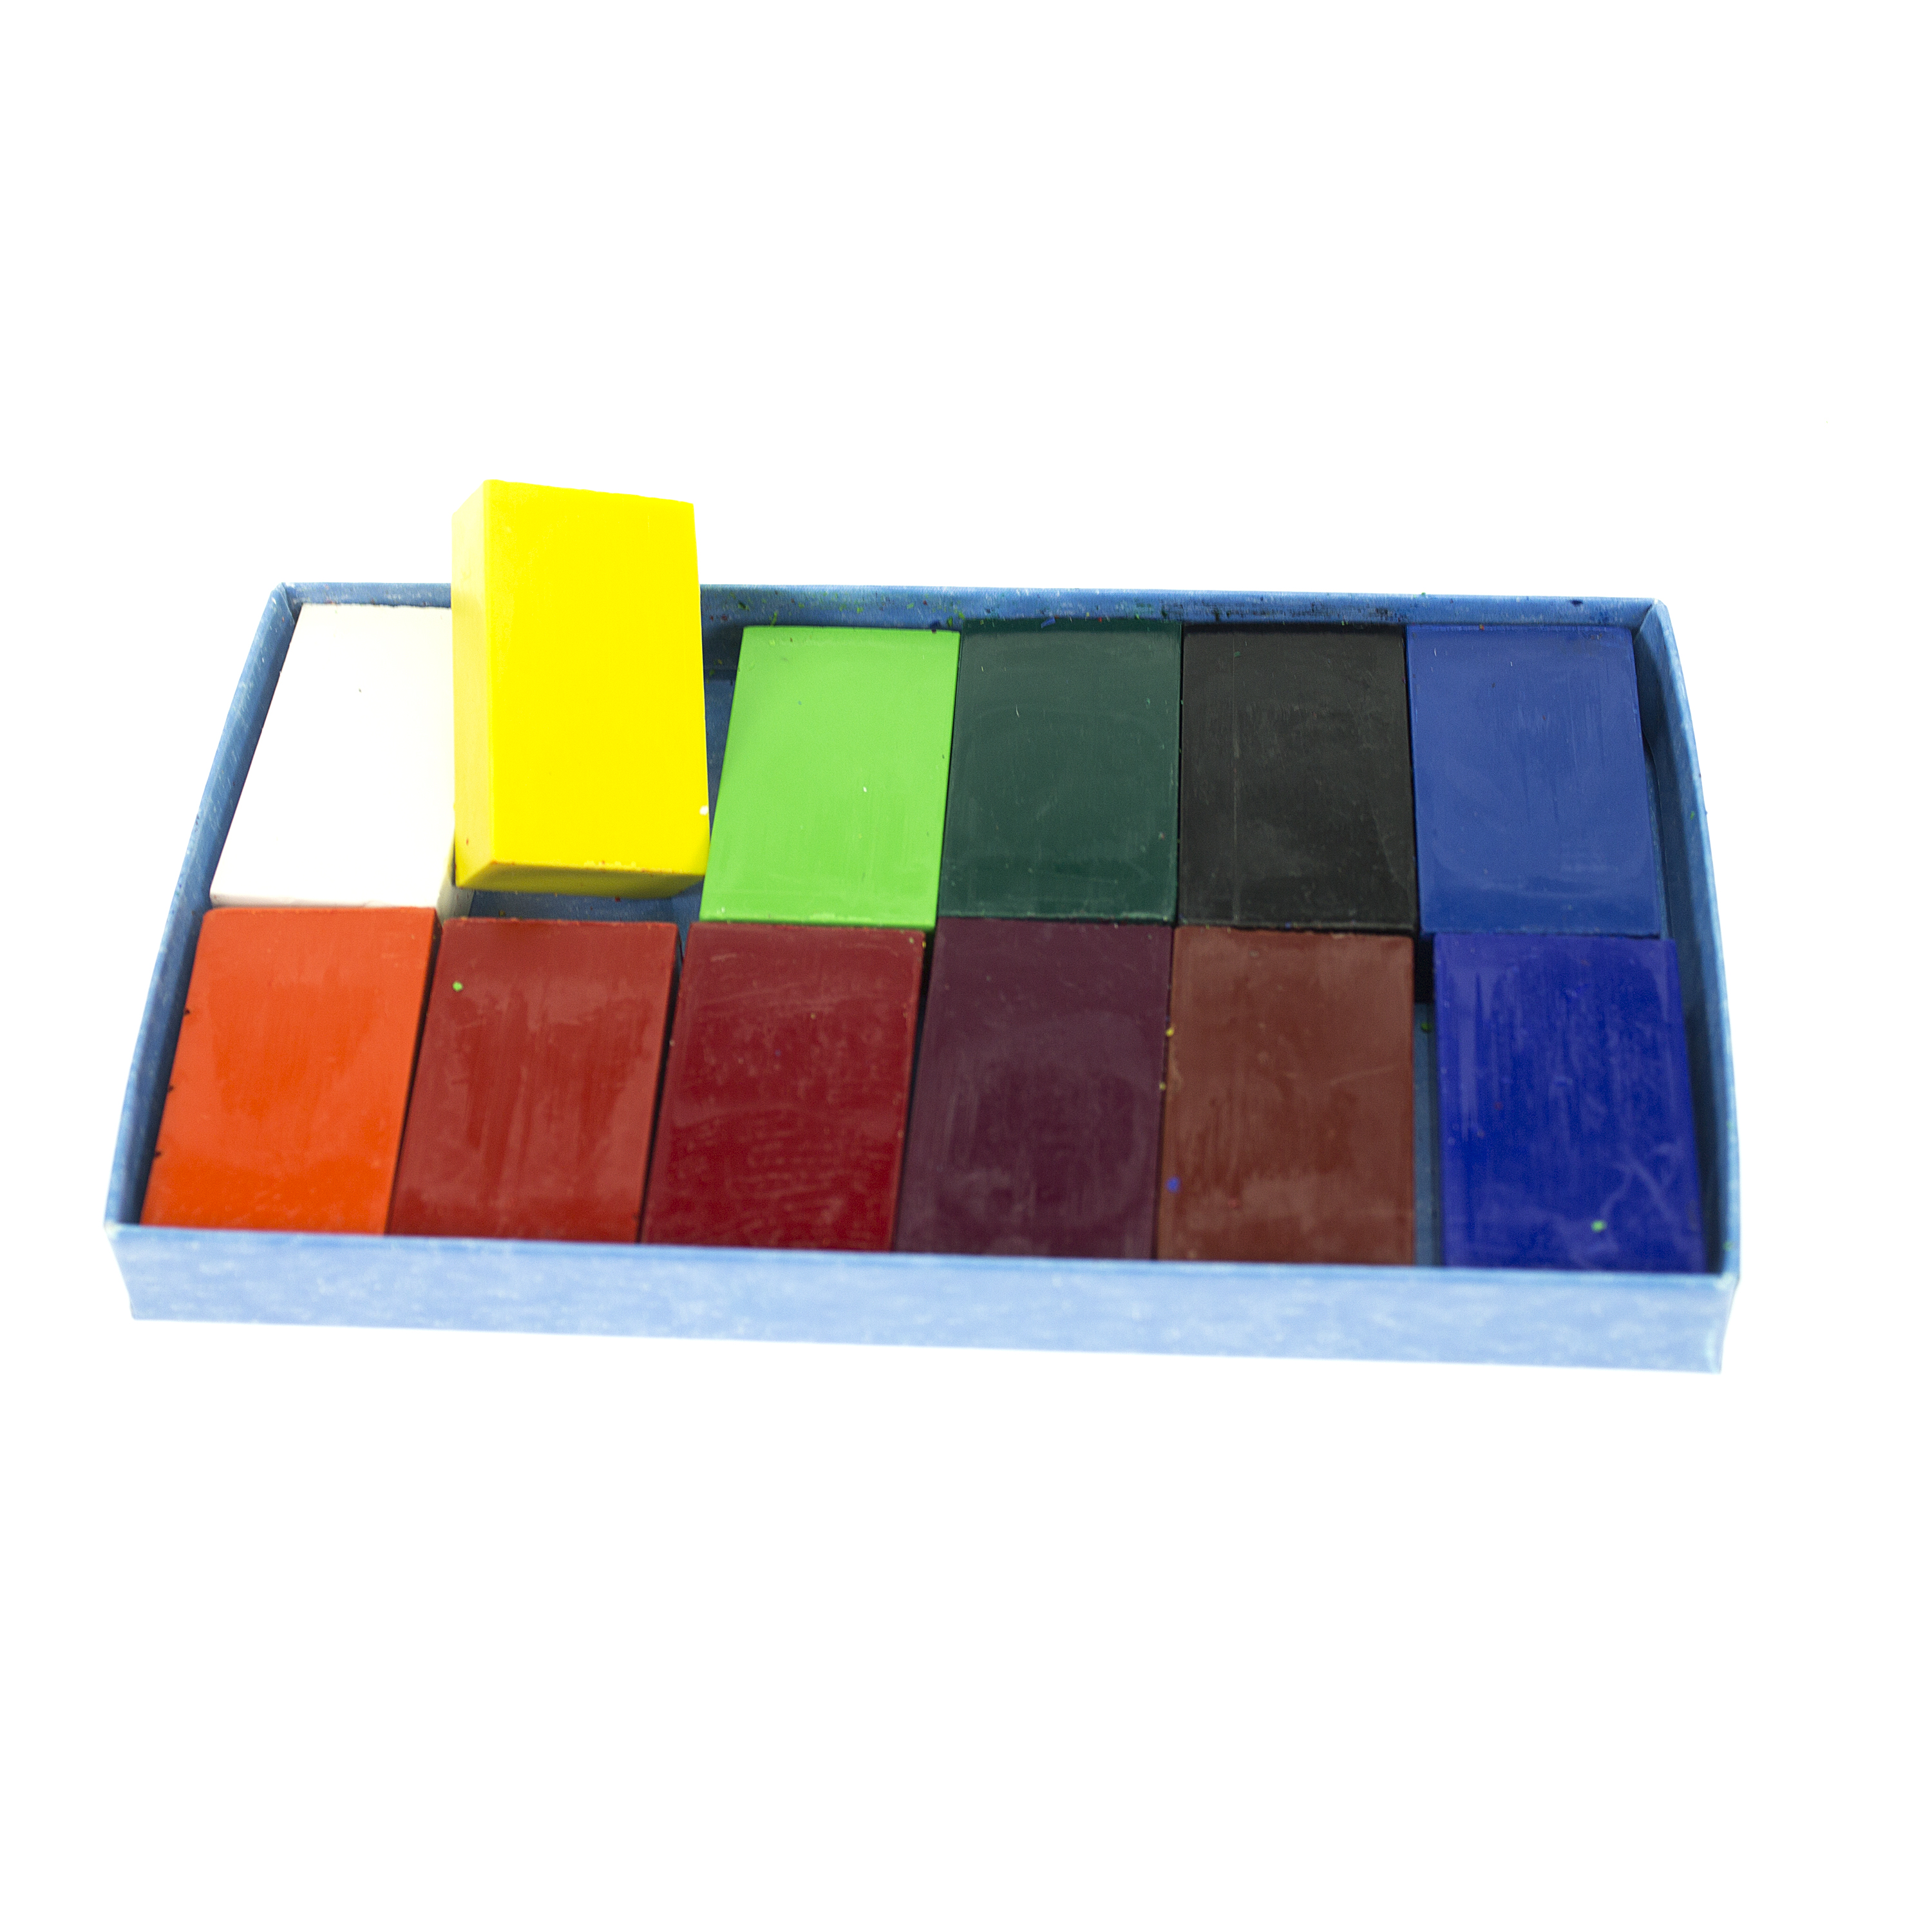 Stockmar 12er-Set Wachsmalblöcke, farbig sortiert, 4,1 x 2,3